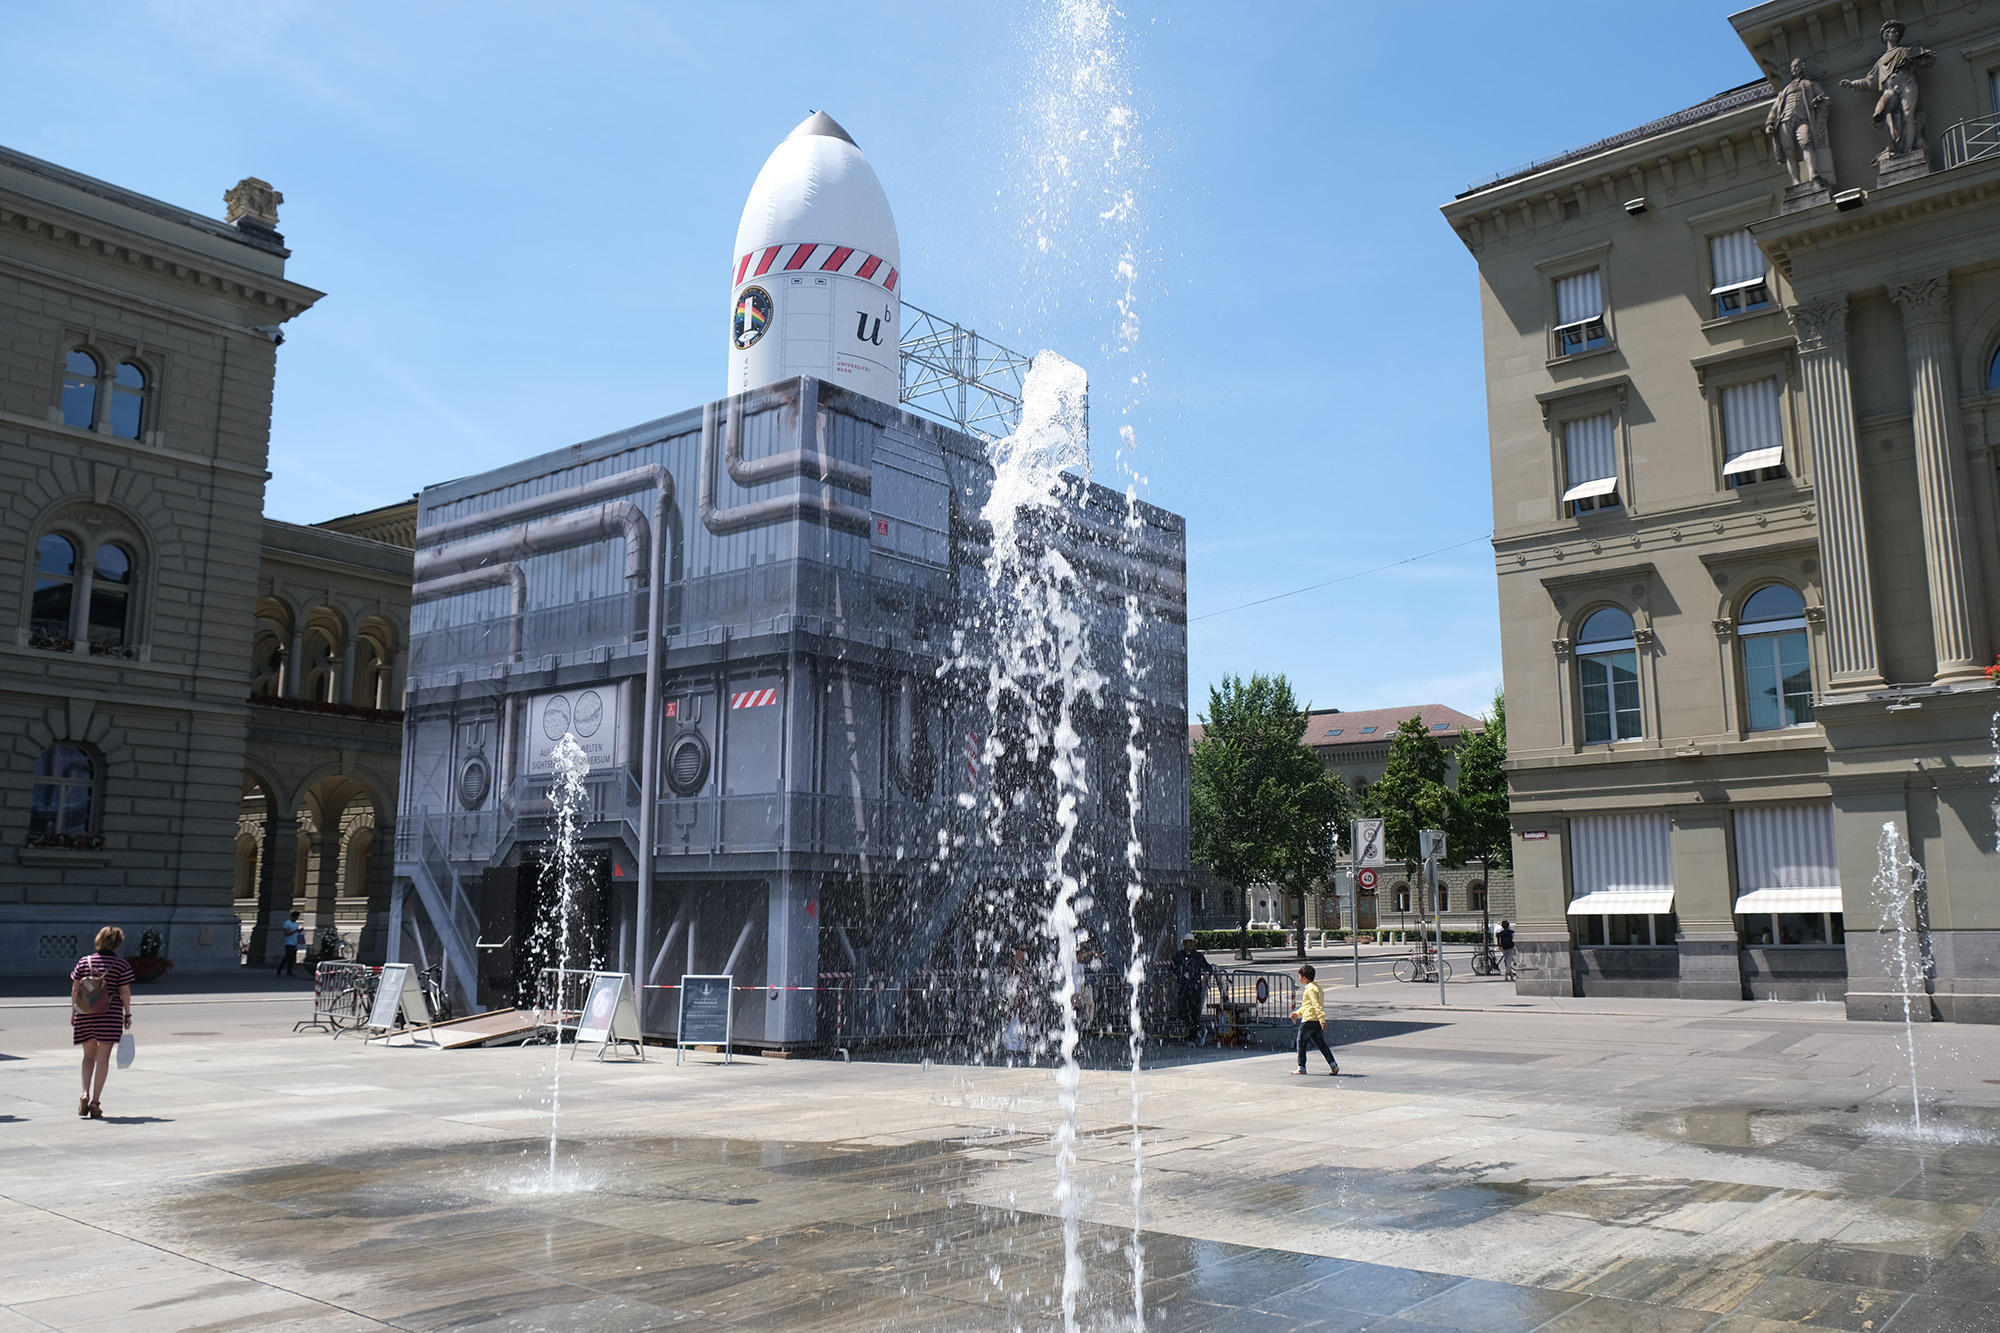 Cubo cohete en la Plaza Federal de Berna, con los chorros de agua